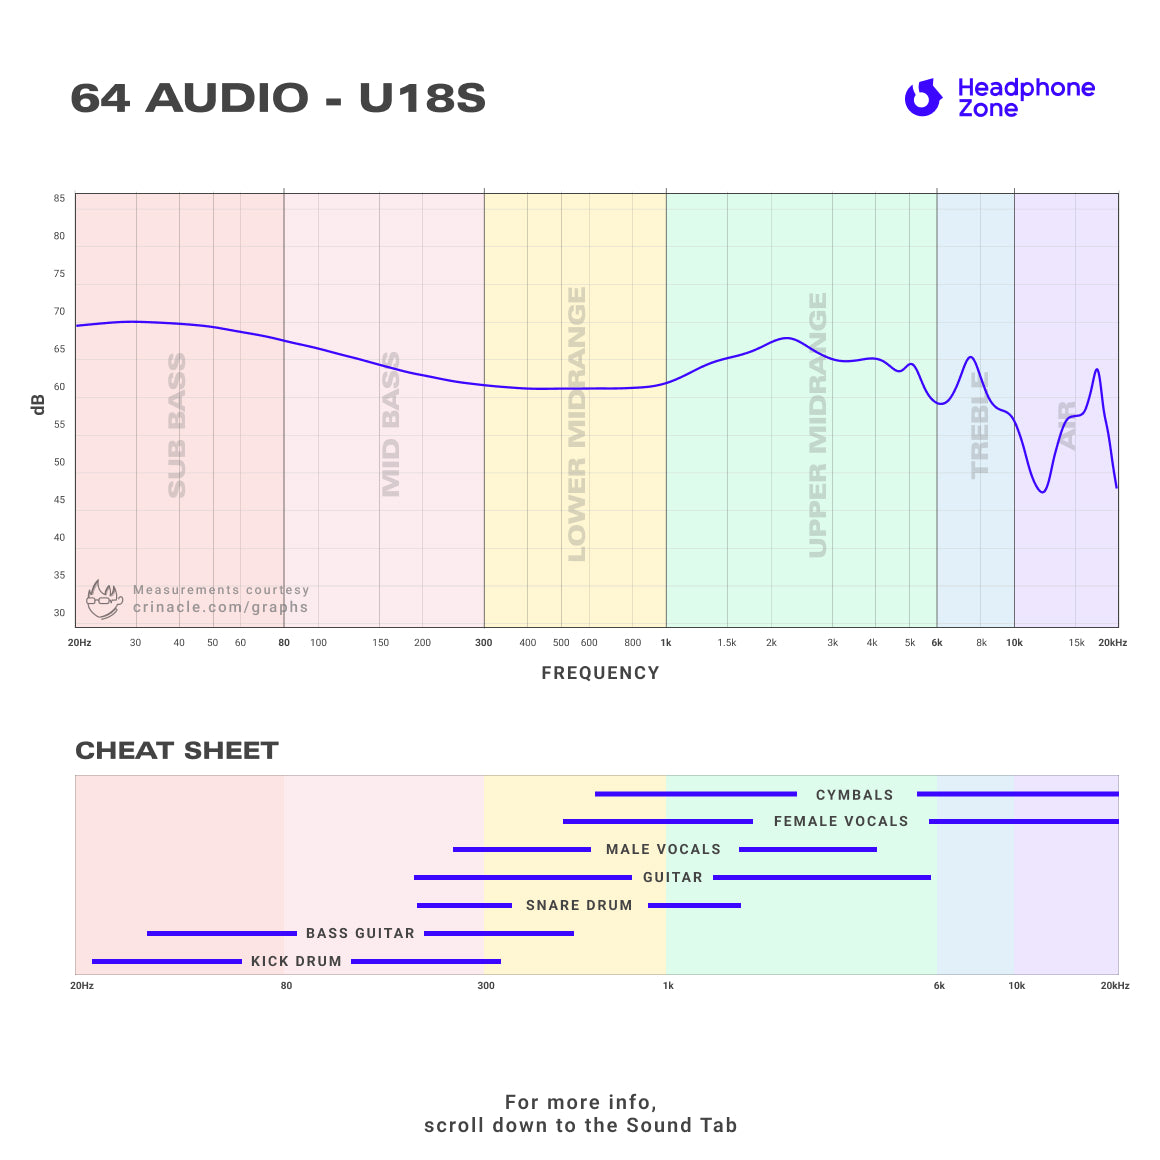 64 Audio - U18s